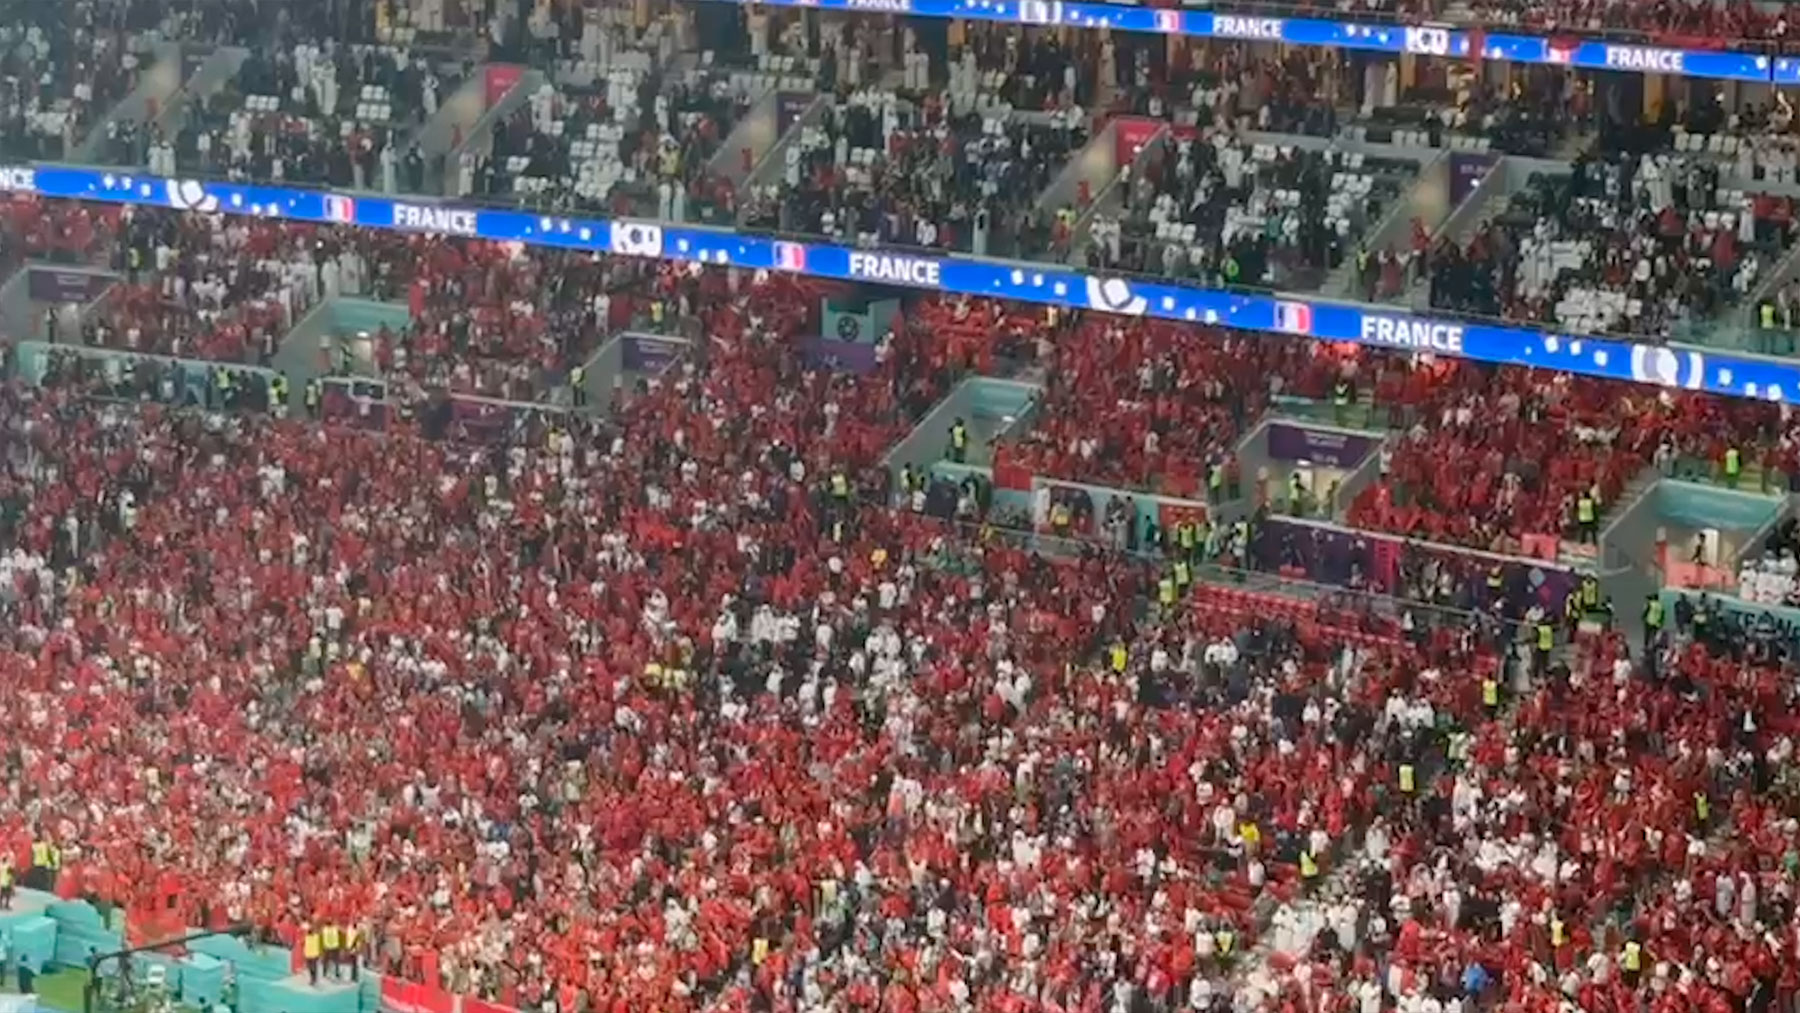 La afición marroquí pitó el himno de Francia antes del partido.